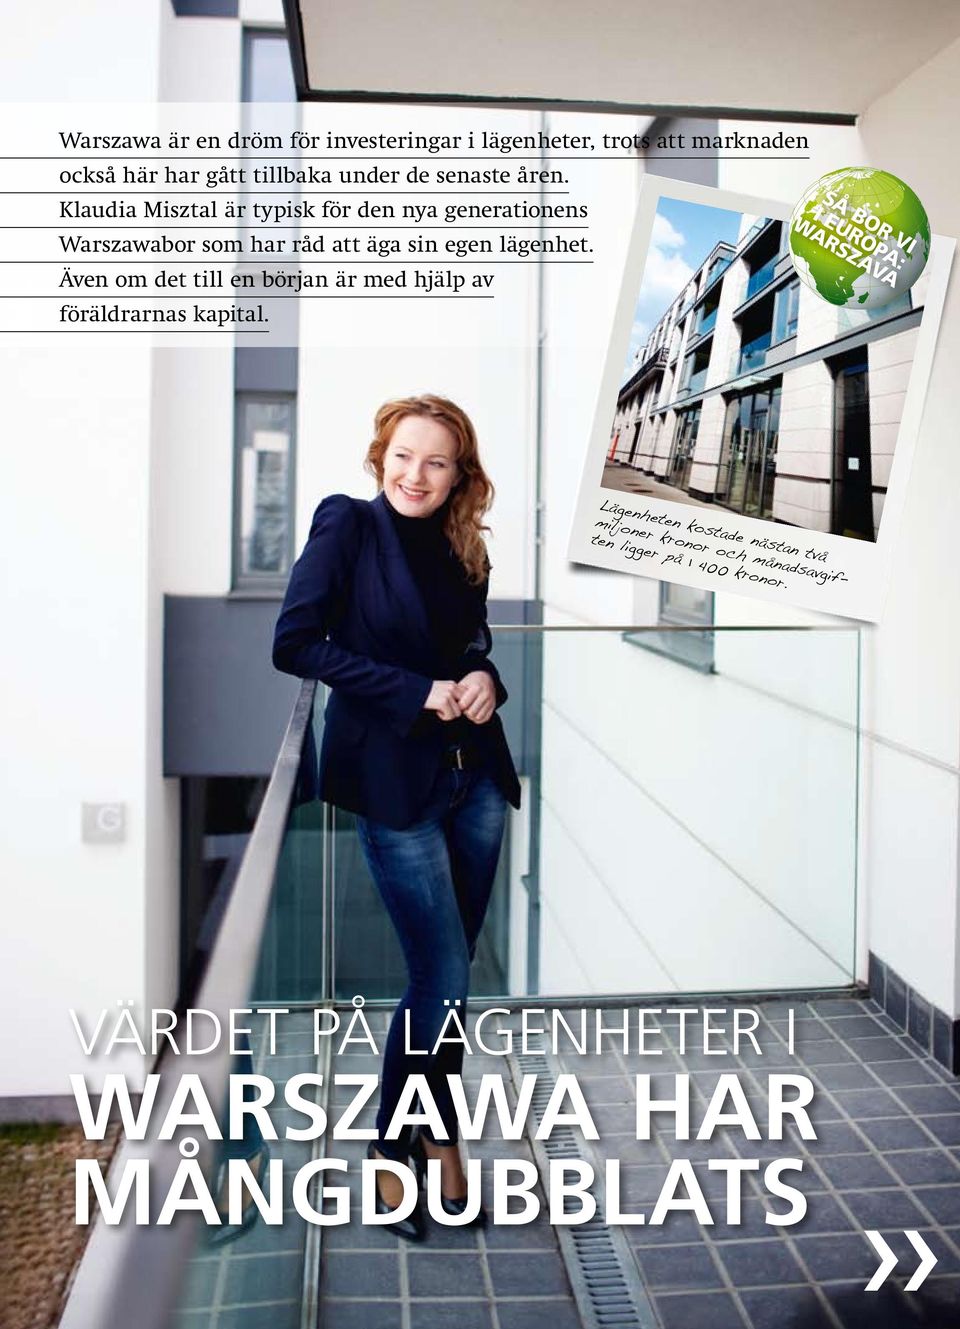 åren. Klaudia Misztal är typisk för den nya generationens Warszawabor som har råd att äga sin egen lägenhet.